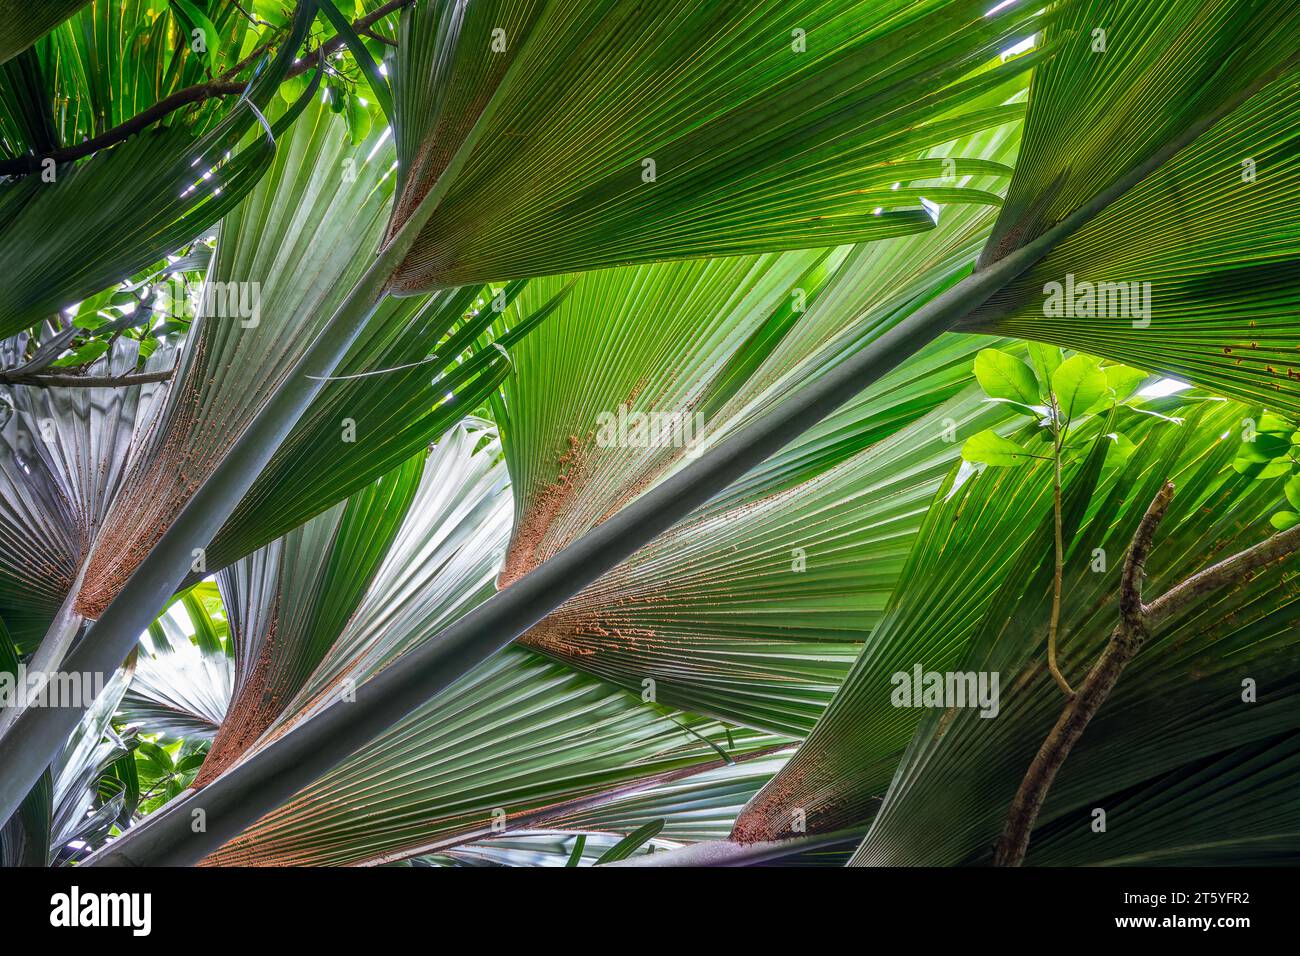 Coco de mer tree (sea coconut) giant palms leaves close up , Vallée de ...